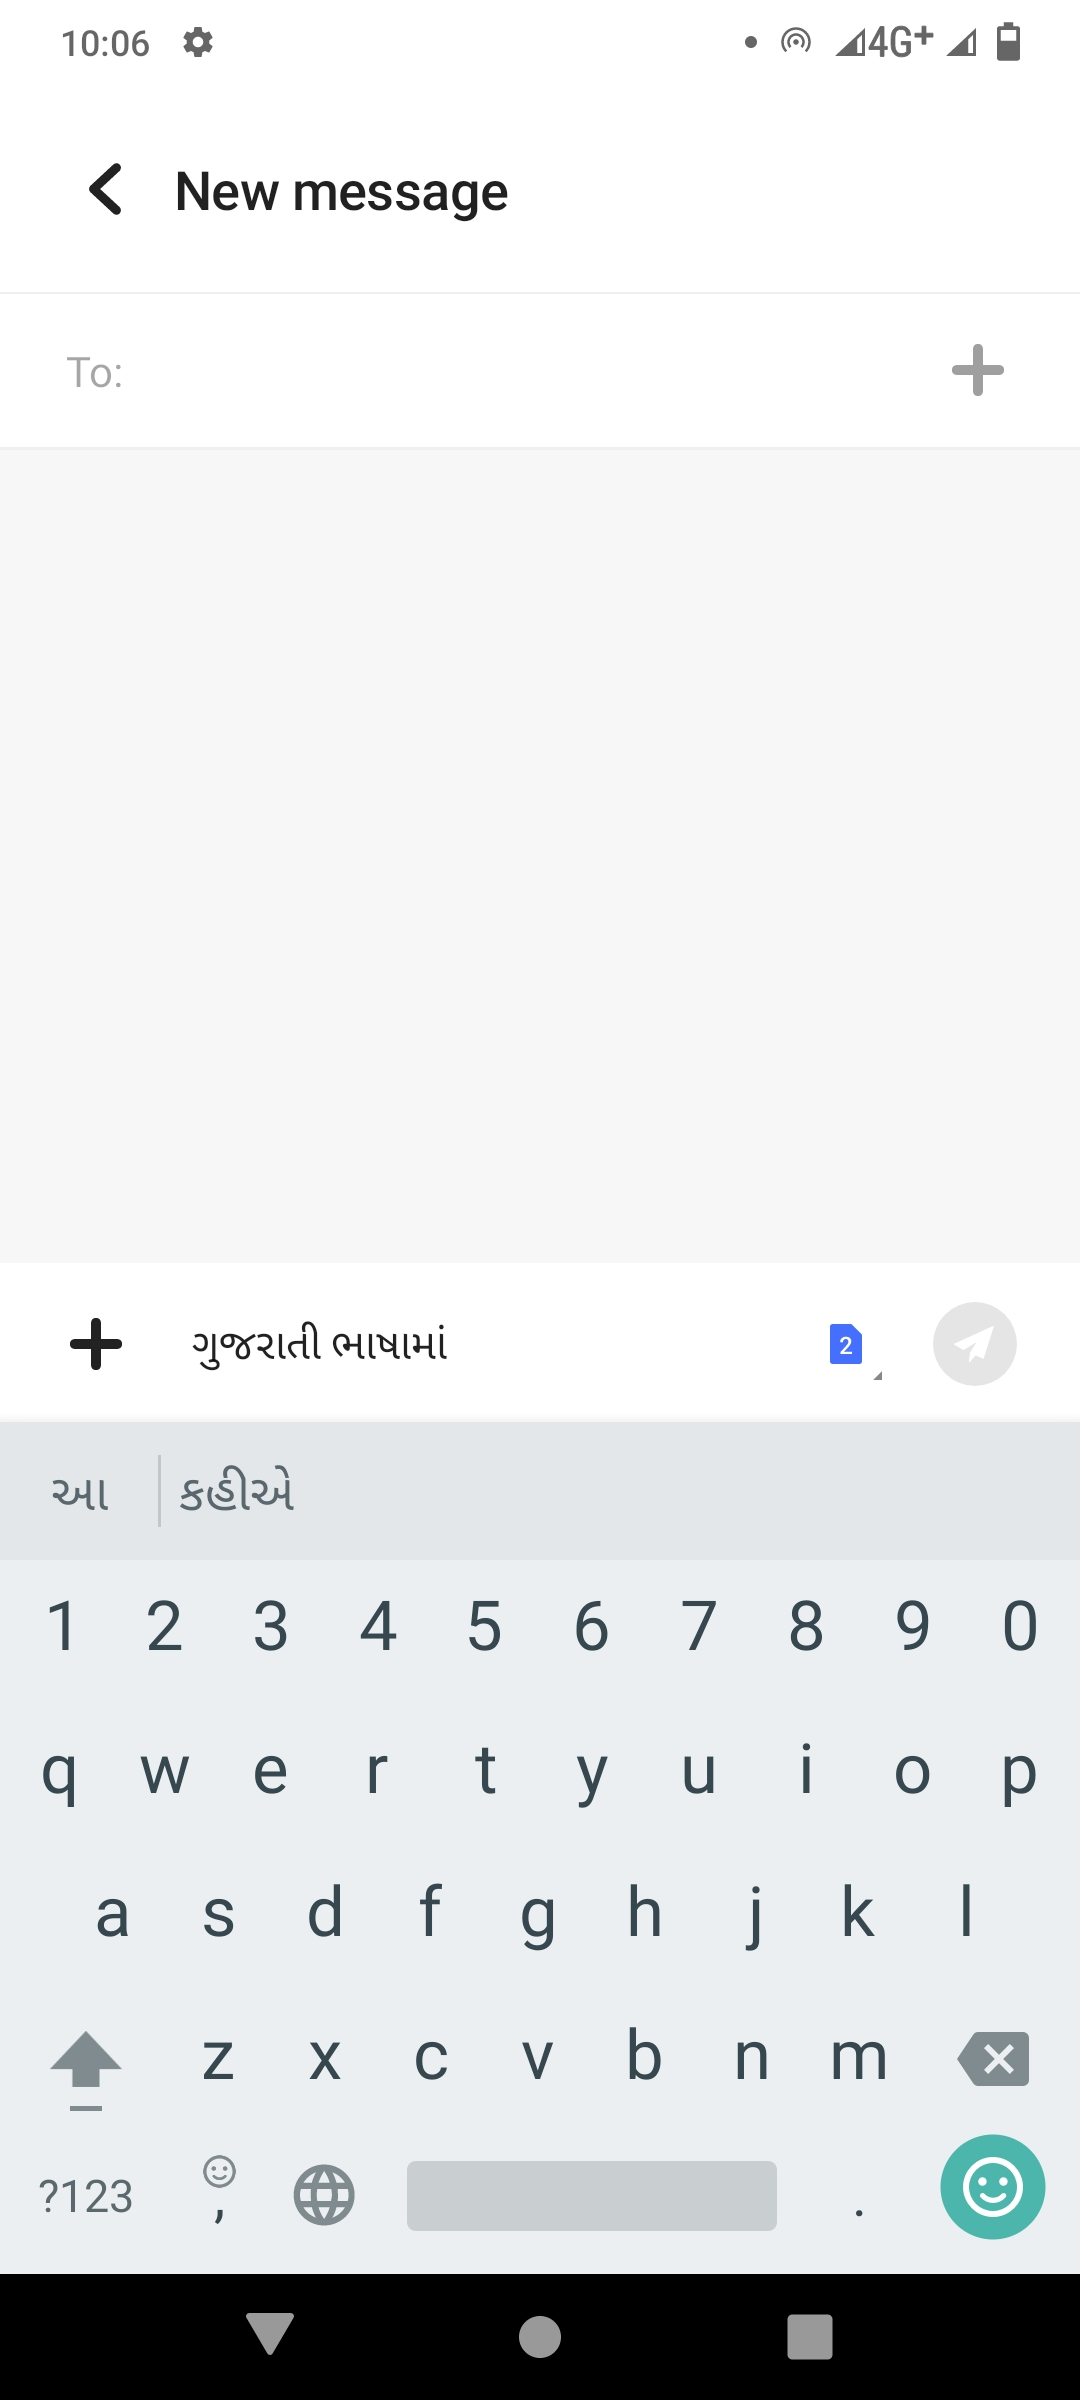 Gujarati keyboard mobile phone